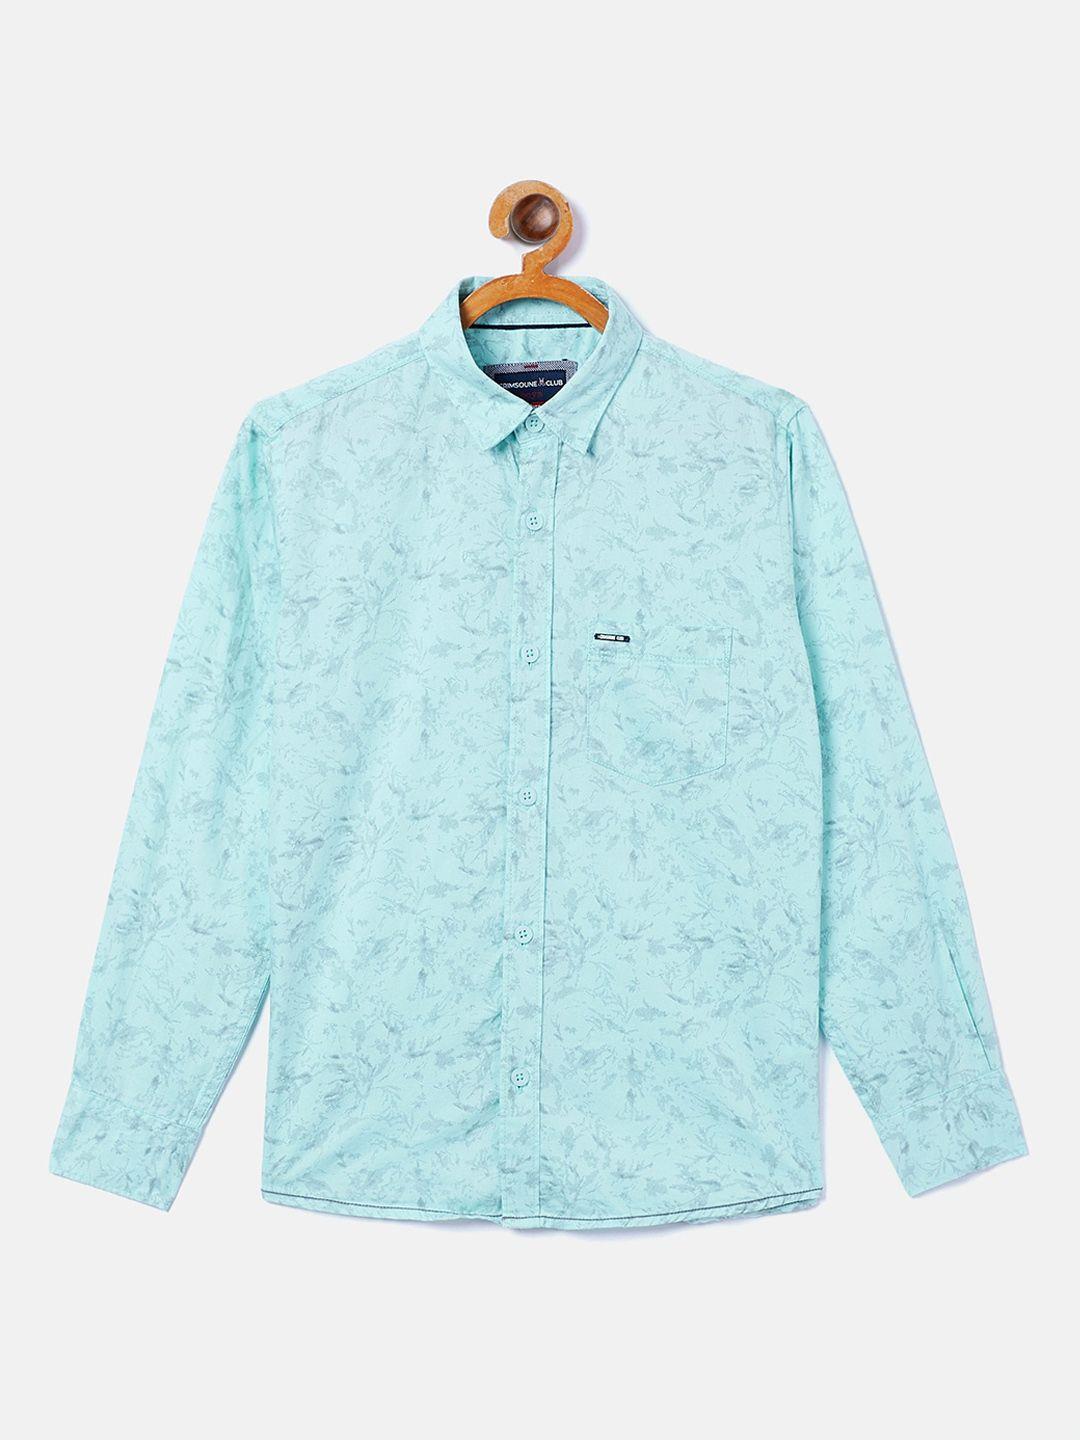 Crimsoune Club Boys Blue Opaque Printed Casual Shirt